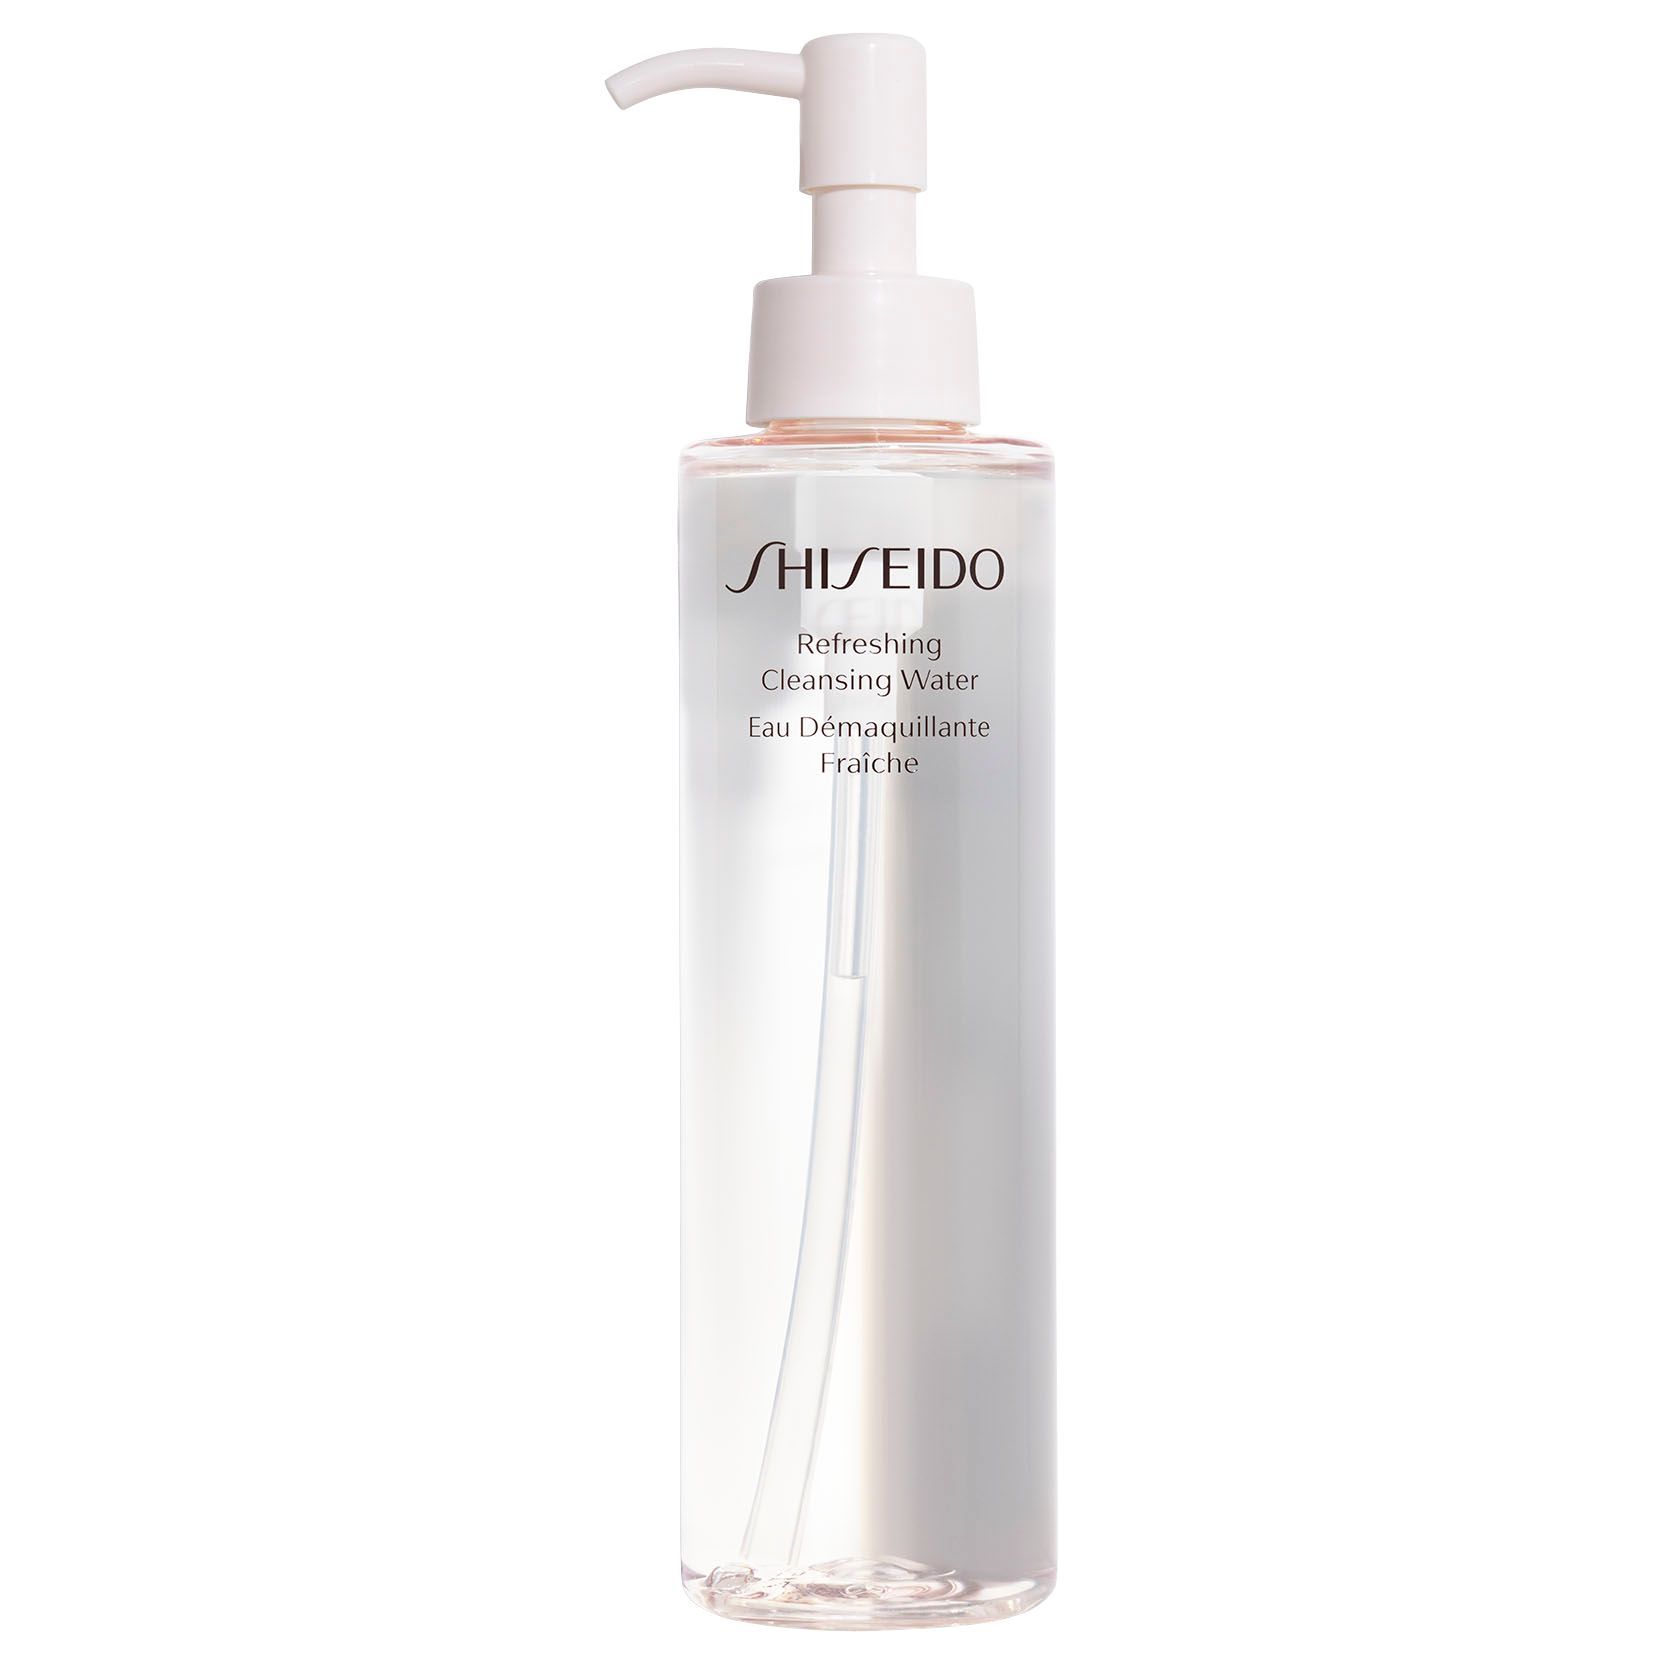 Shiseido Refreshing Cleansing Water, 180ml